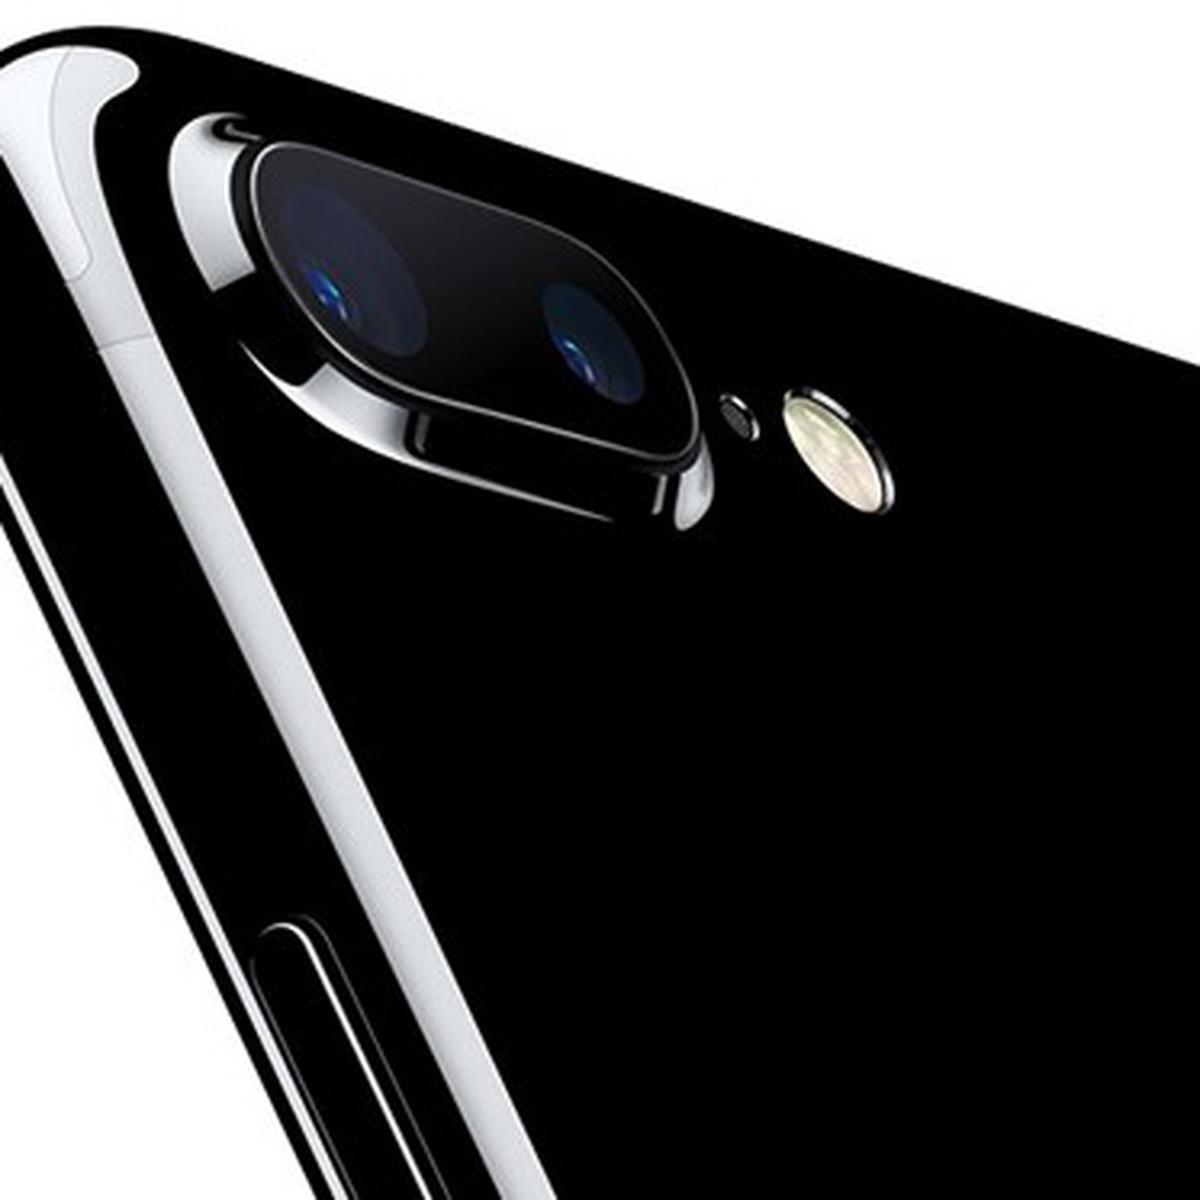 iPhone 7 Sudah Bisa Dipesan, Ini Daftar Harganya - Tekno Liputan6.com